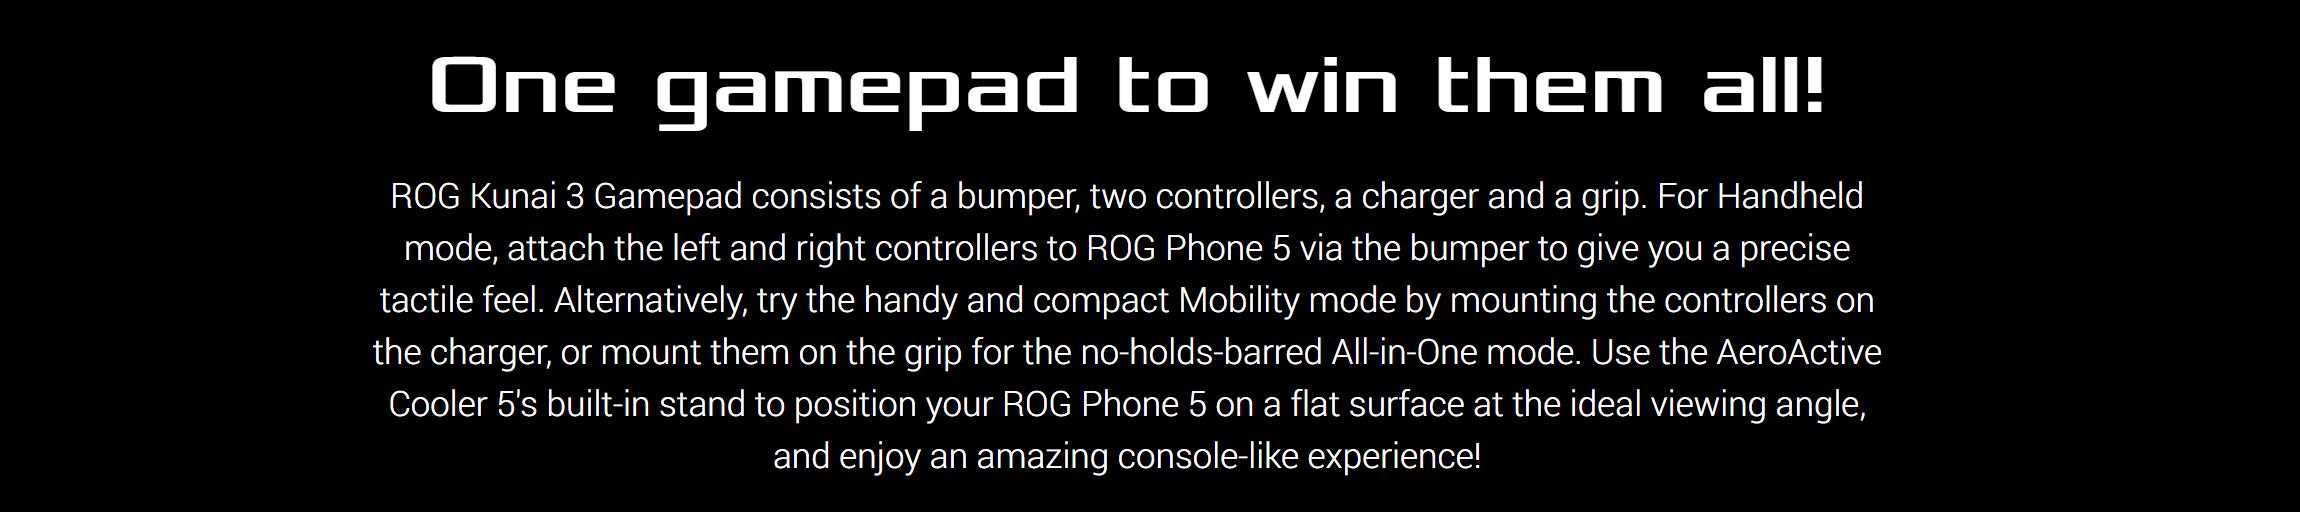 ASUS ROG Kunai 3 Gamepad For ROG Phone 5 29